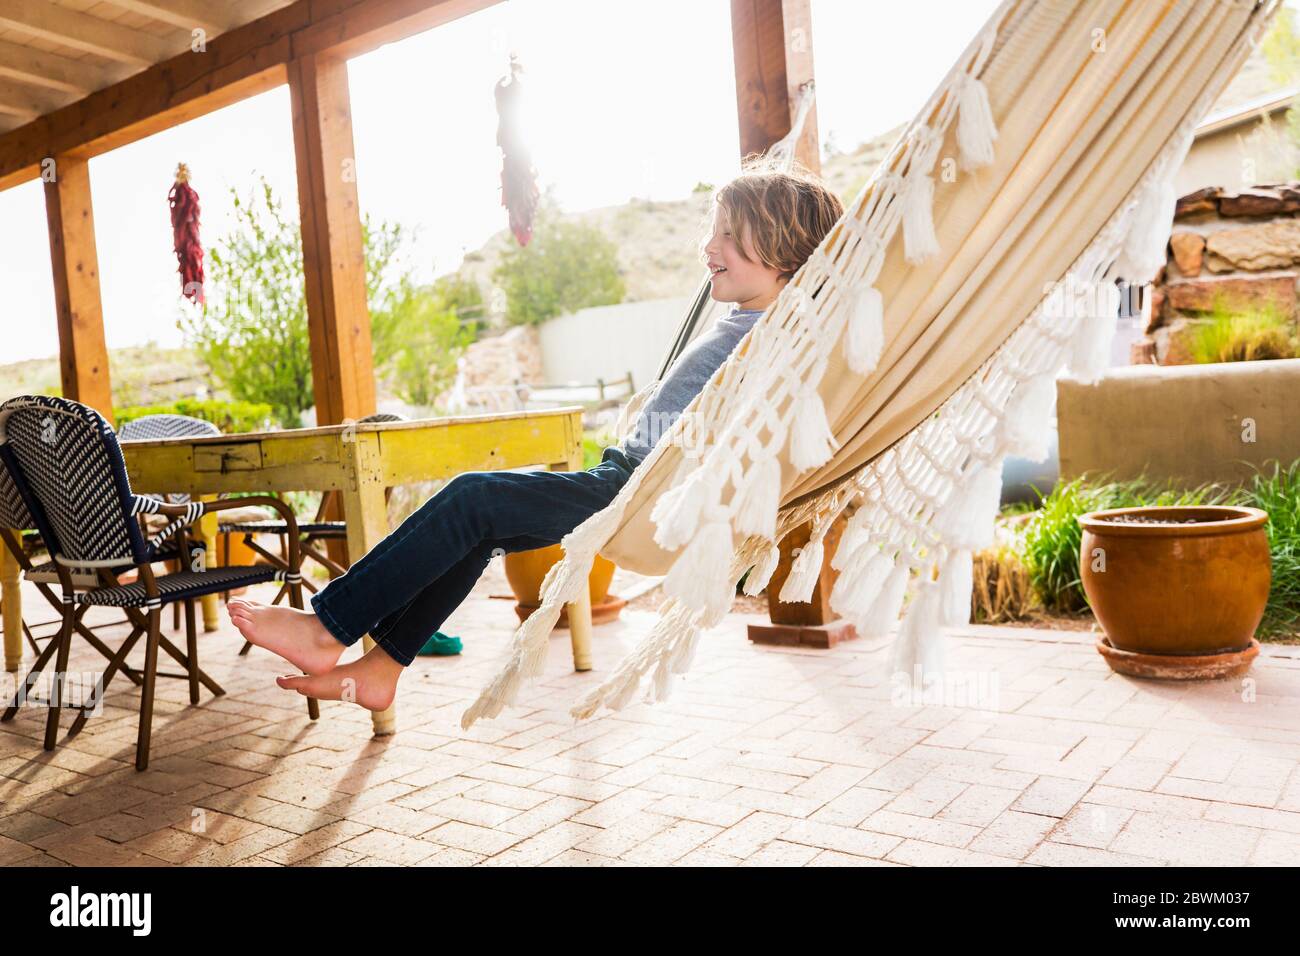 Garçon de six ans balançant dans un hamac sur une terrasse. Banque D'Images